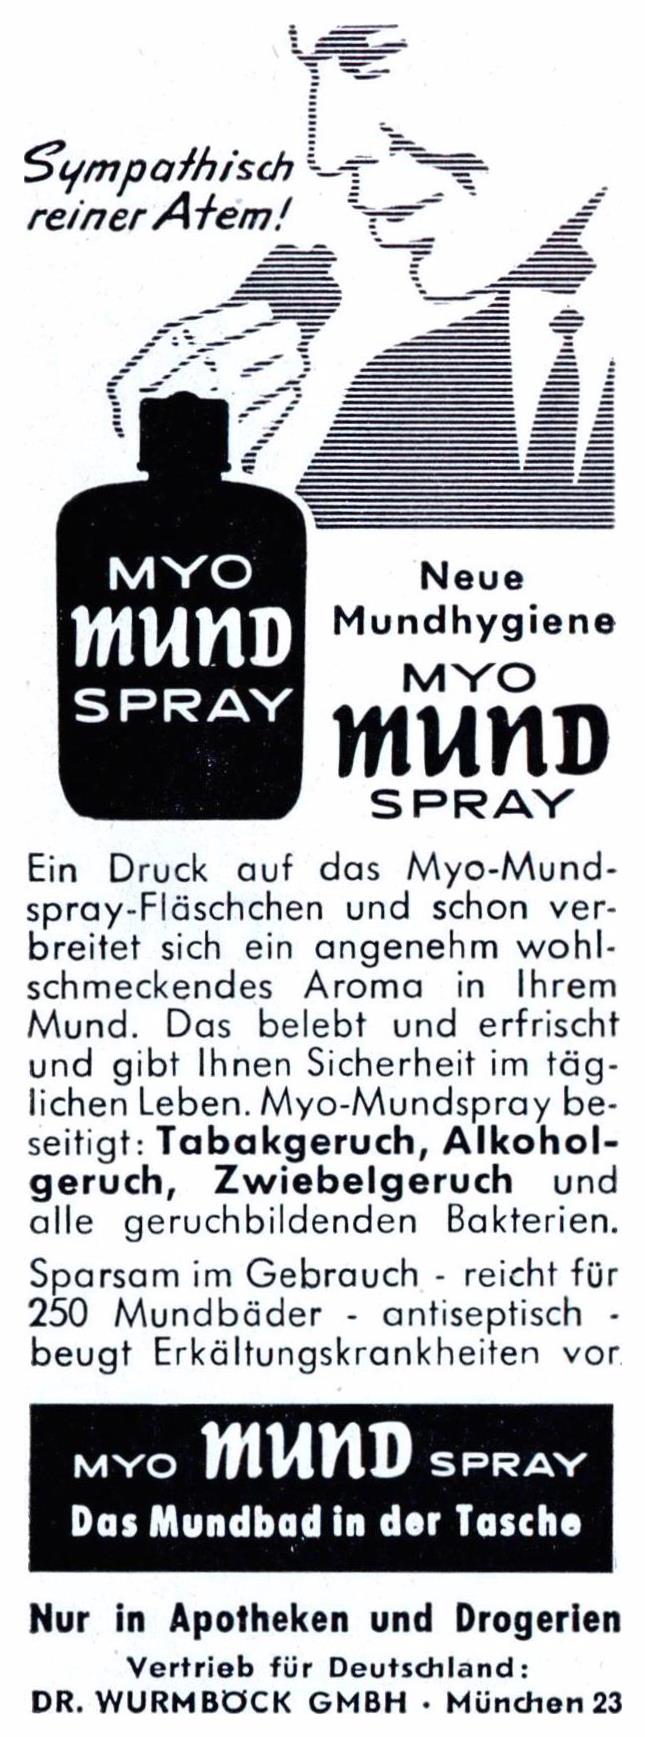 Myo Mund Spray 1959 0.jpg